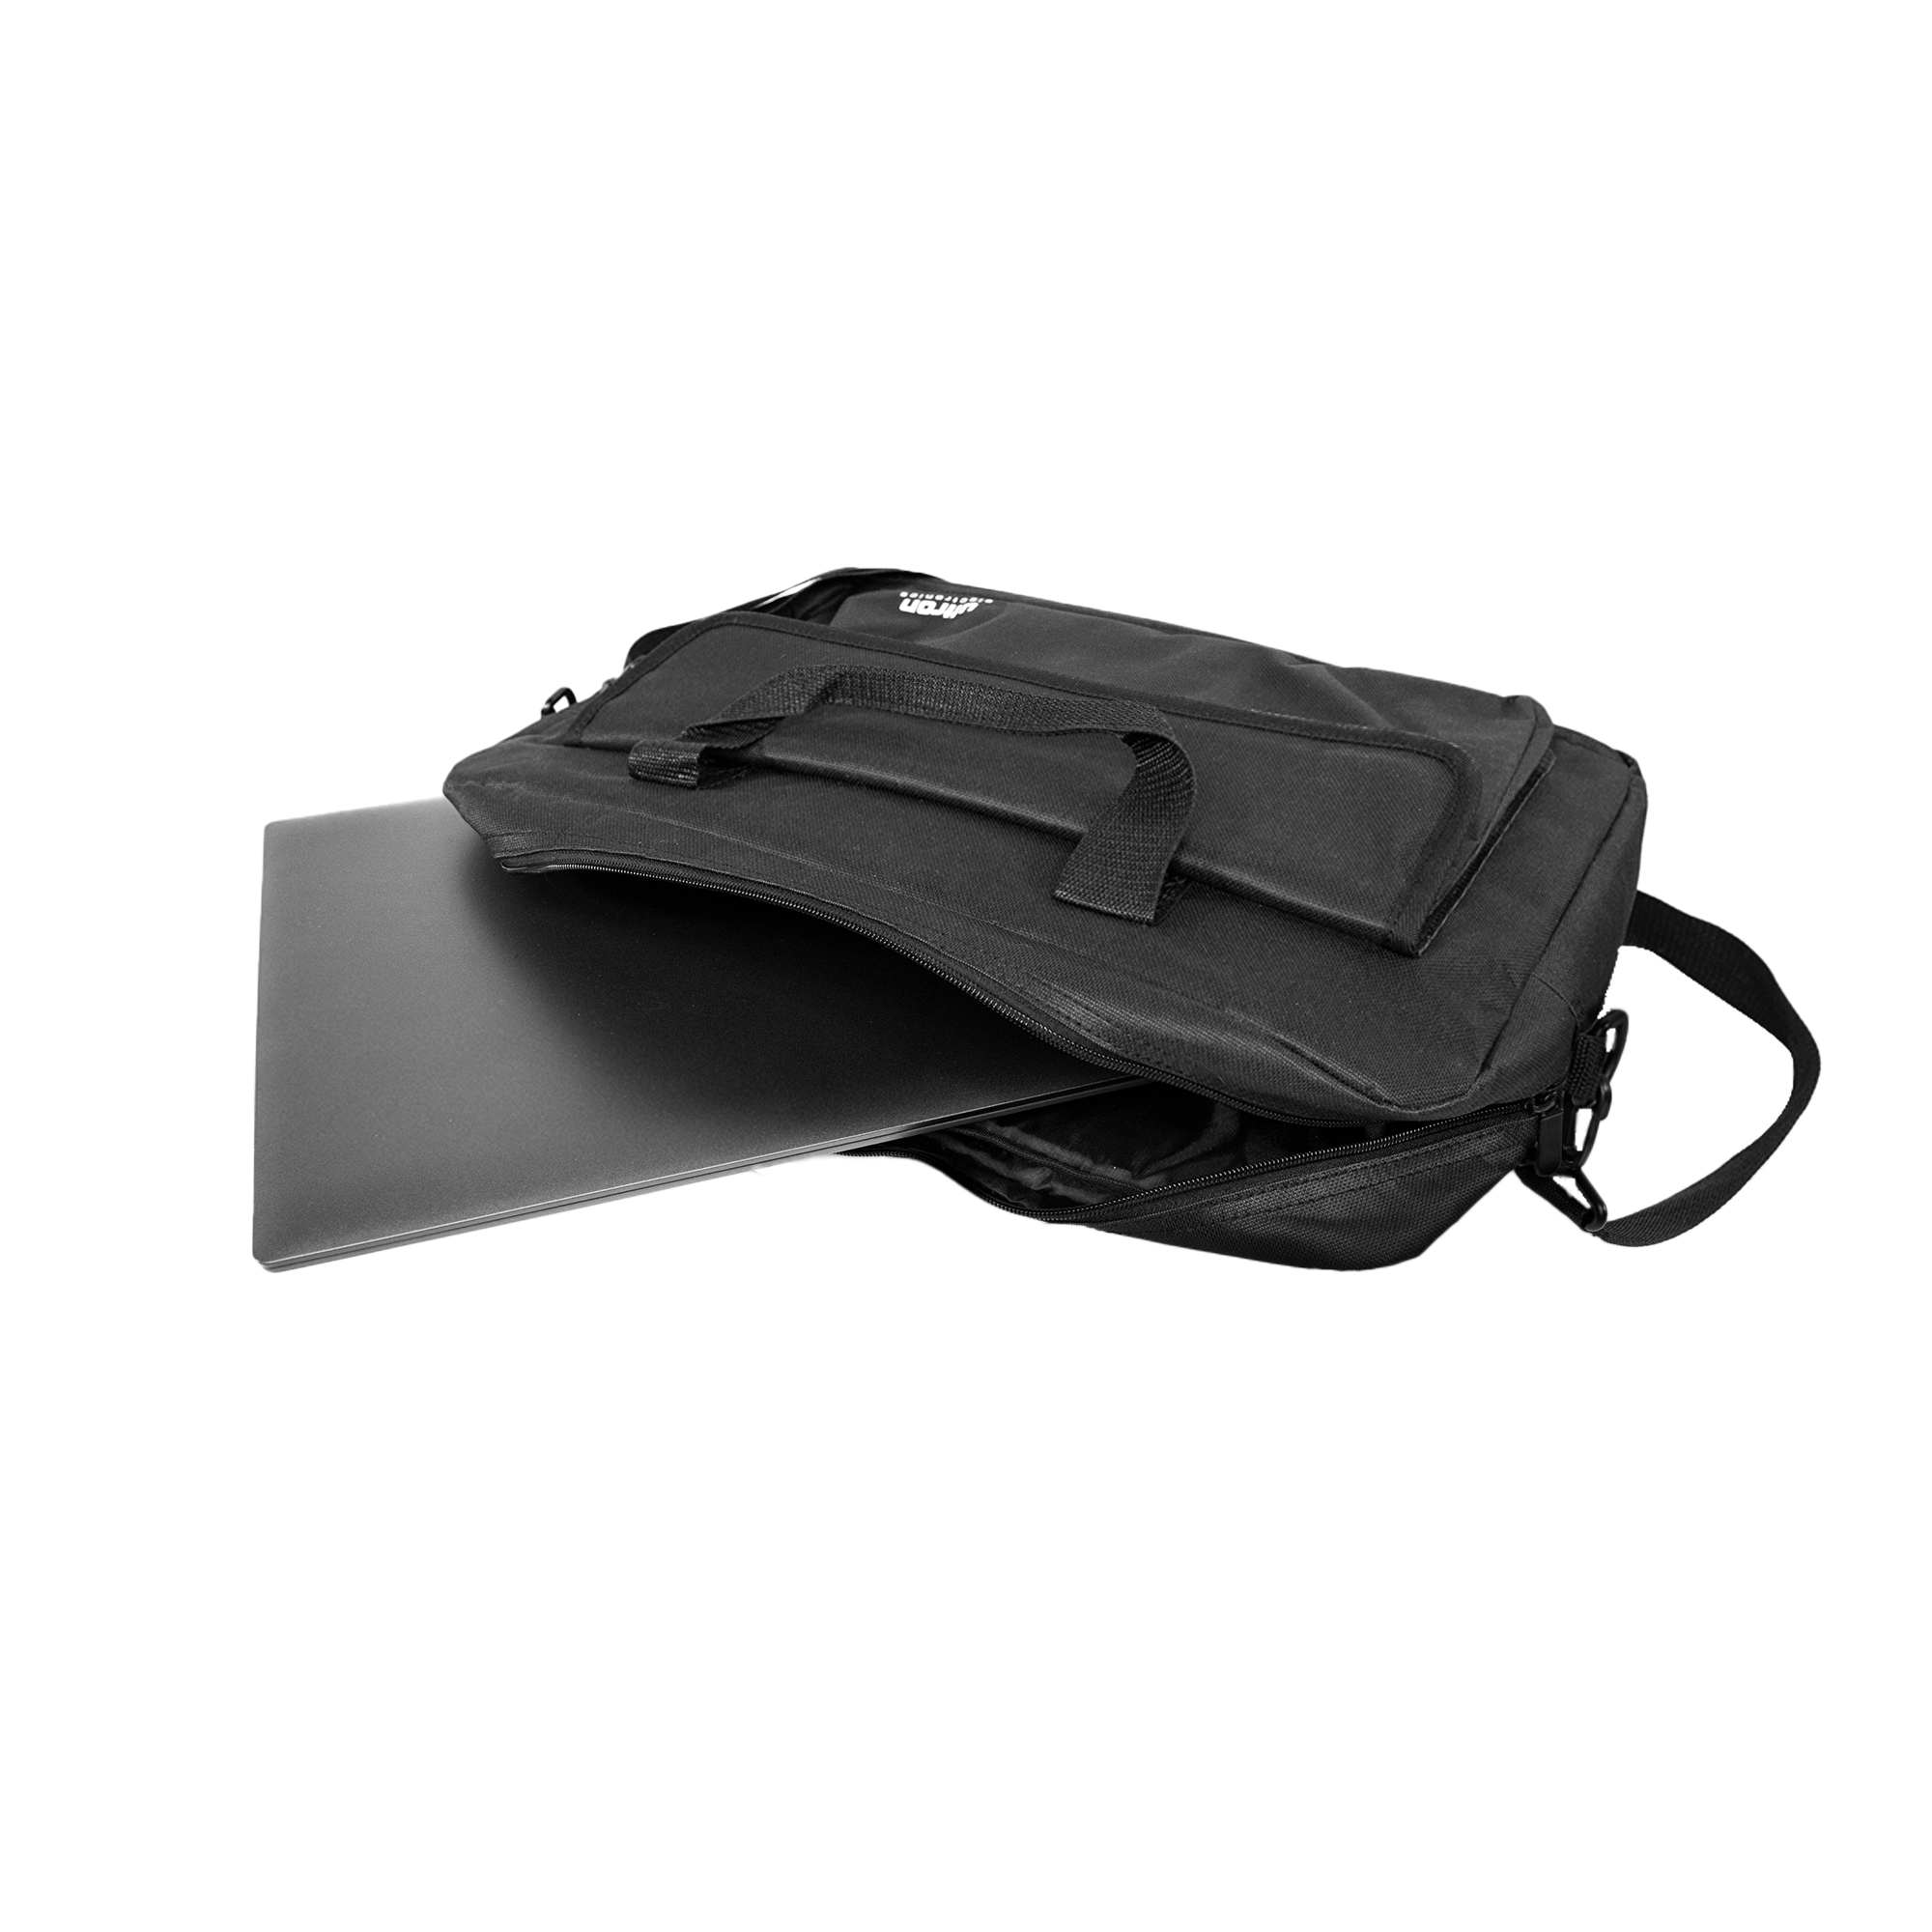 Notebook Tasche Ultron (371957) - kompakte 15,6" Laptoptasche, Umhängetasche/Tragetasche bis 15,6" (39,6cm)